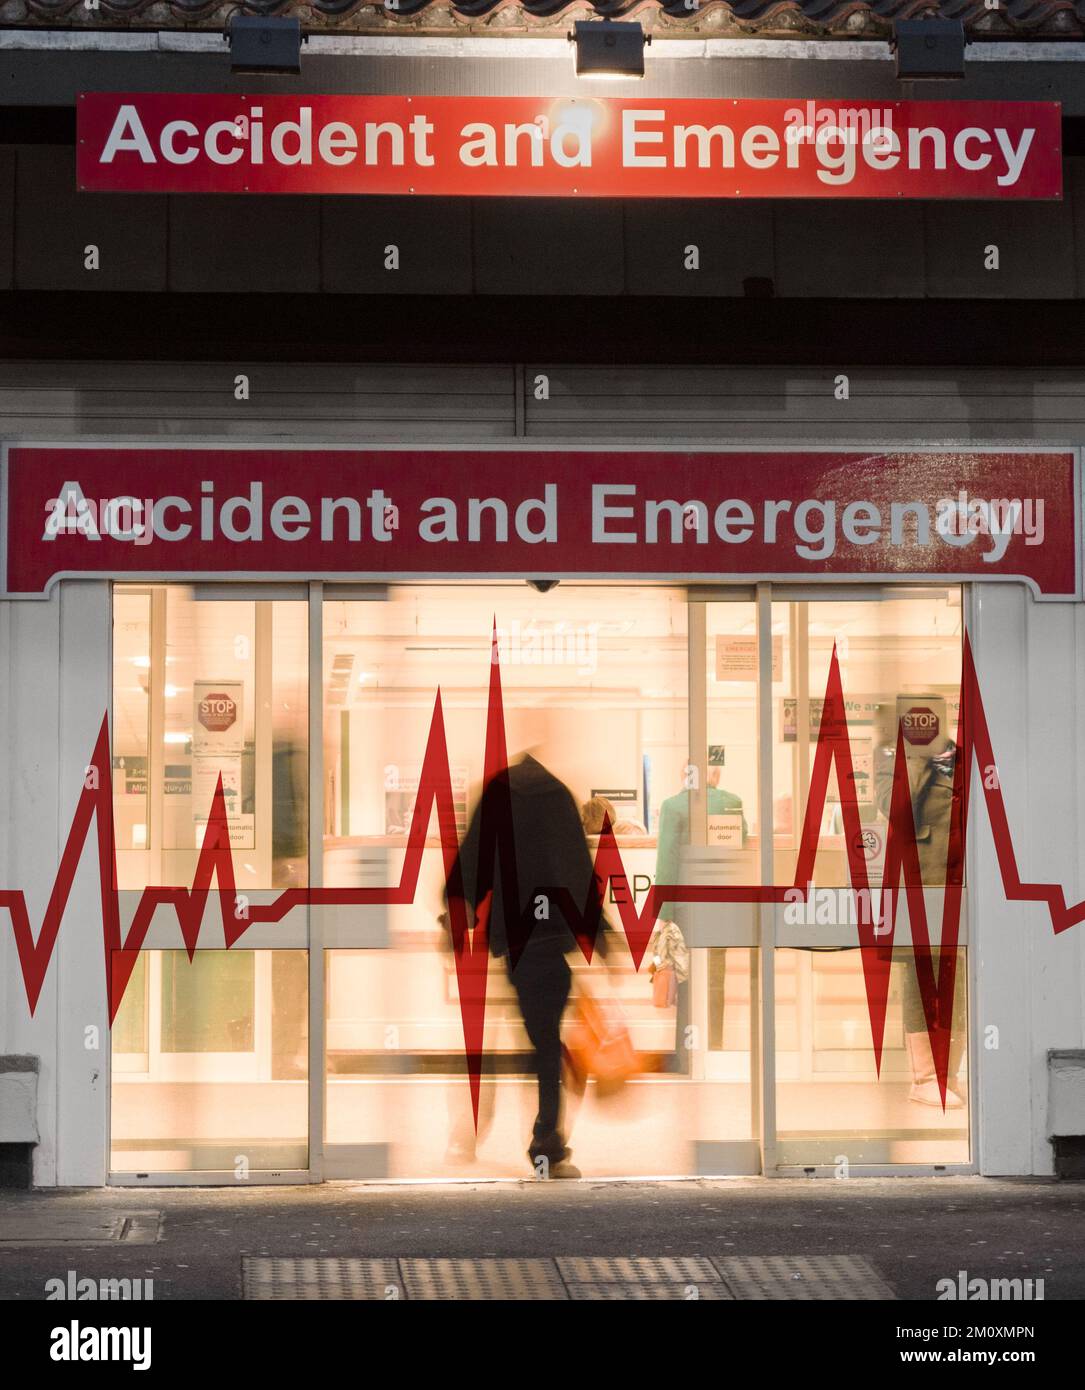 Entrée en cas d'accident et d'urgence à l'hôpital NHS. Angleterre, Royaume-Uni. concept Banque D'Images